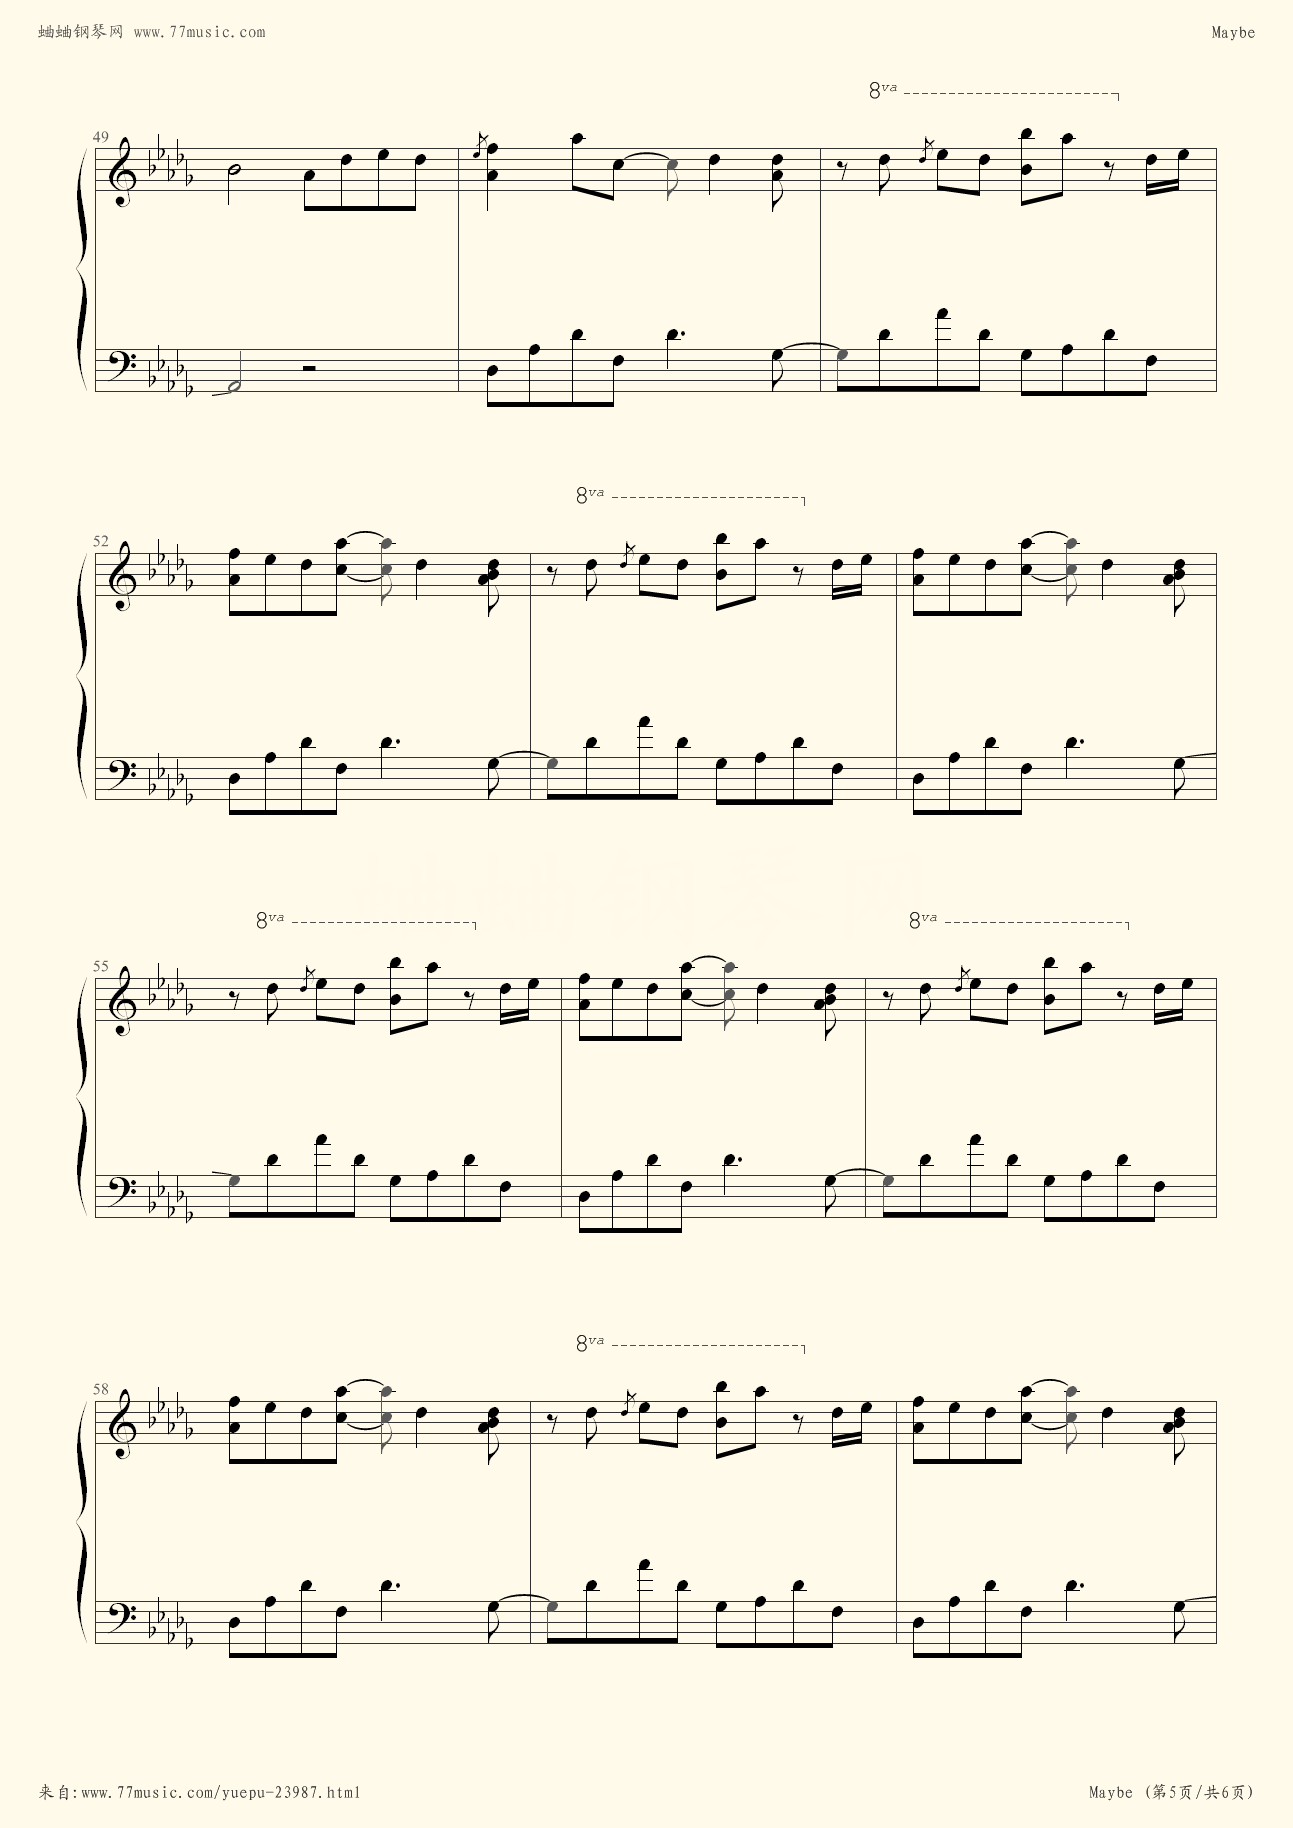 Maybe - Yiruma - Flash Piano Sheet Music Free